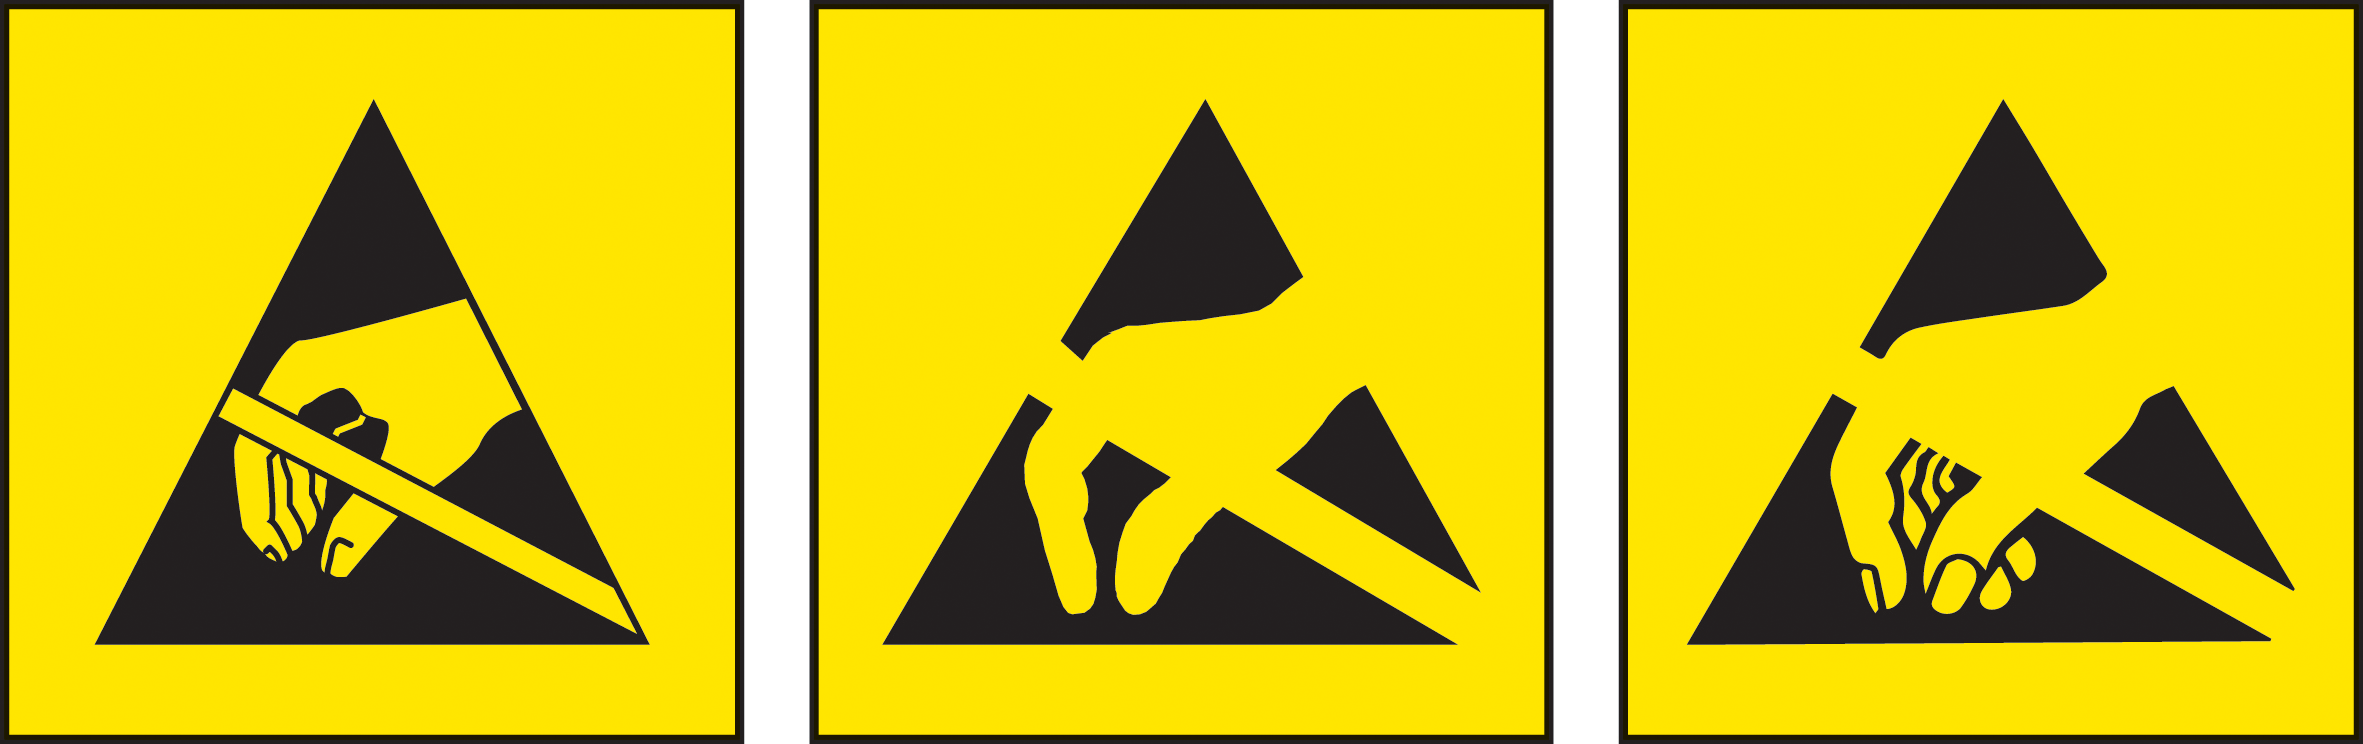 Understanding Symbols: Static Electricity Hazards | In Compliance ...